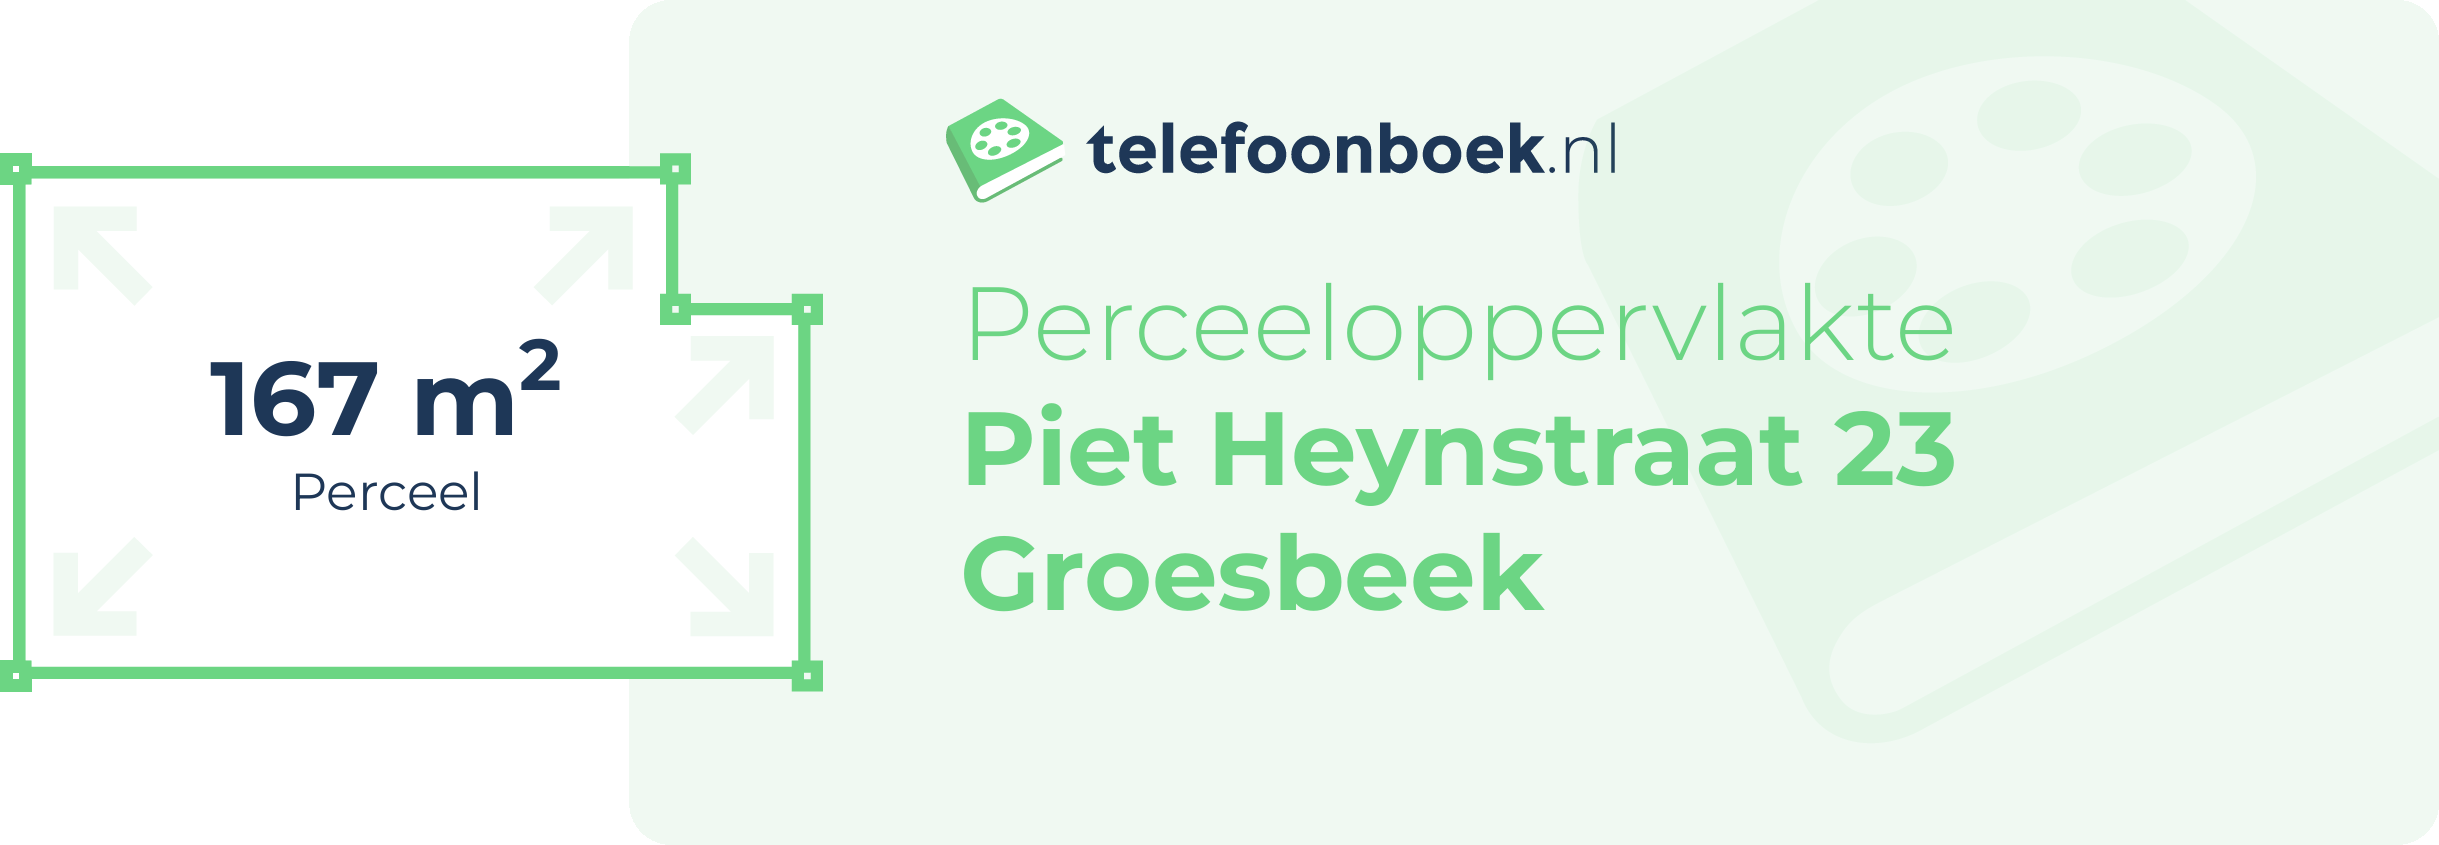 Perceeloppervlakte Piet Heynstraat 23 Groesbeek